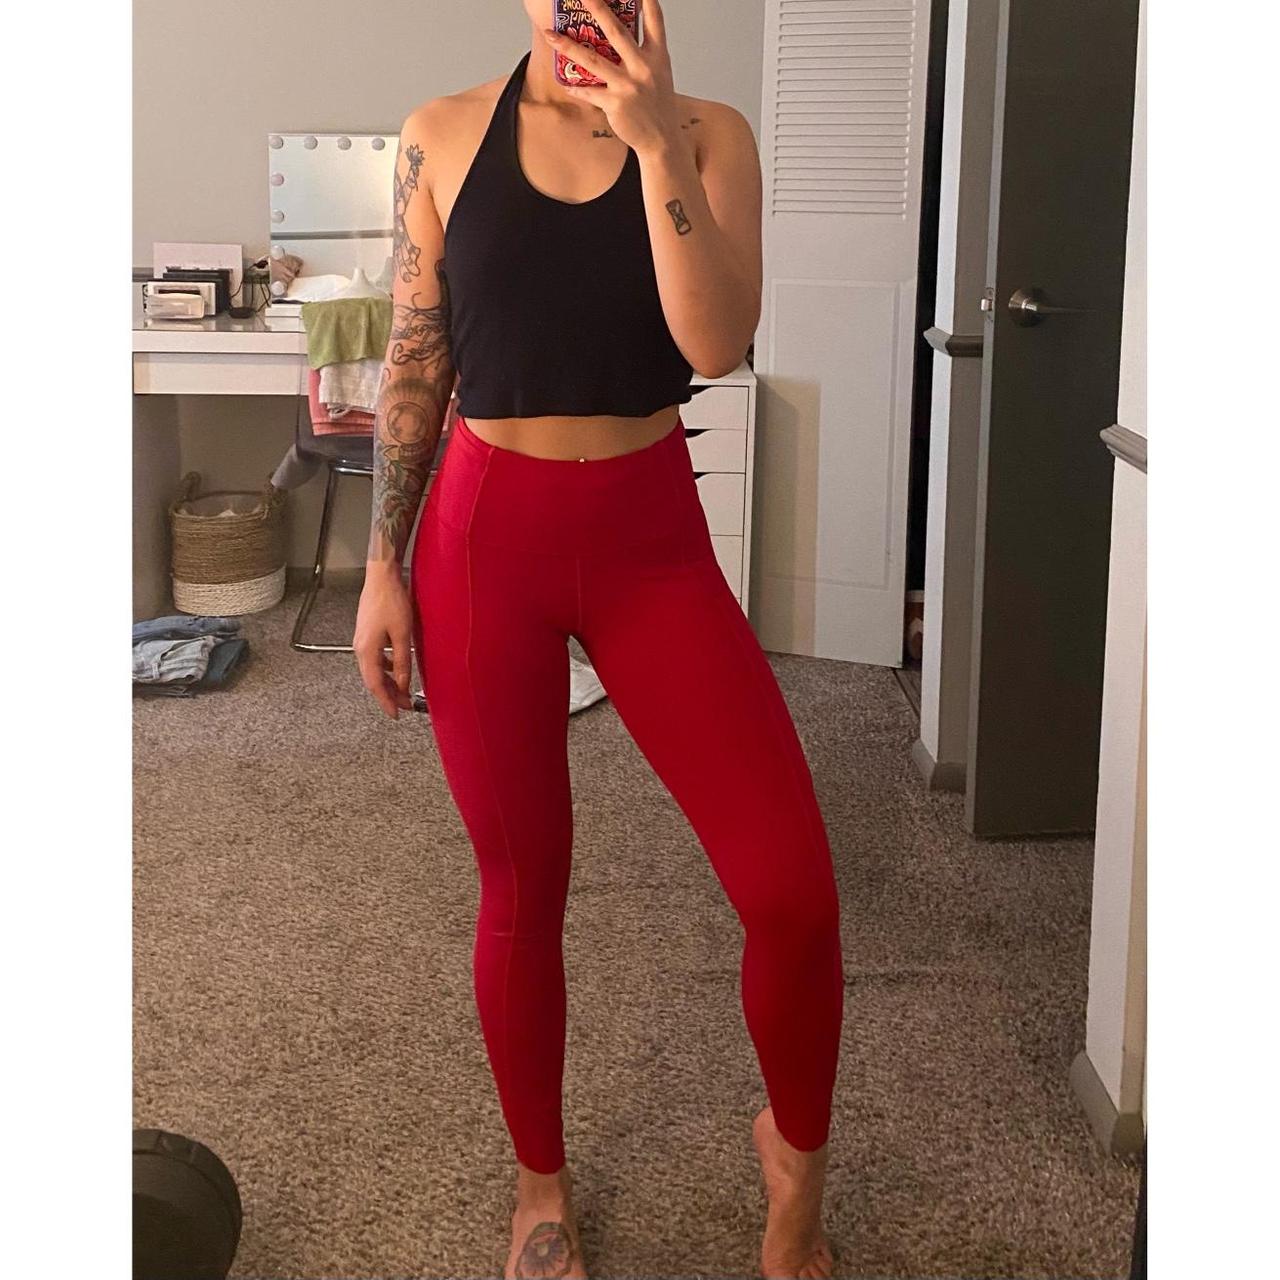 Red Lululemon leggings in size 4! I honestly don’t